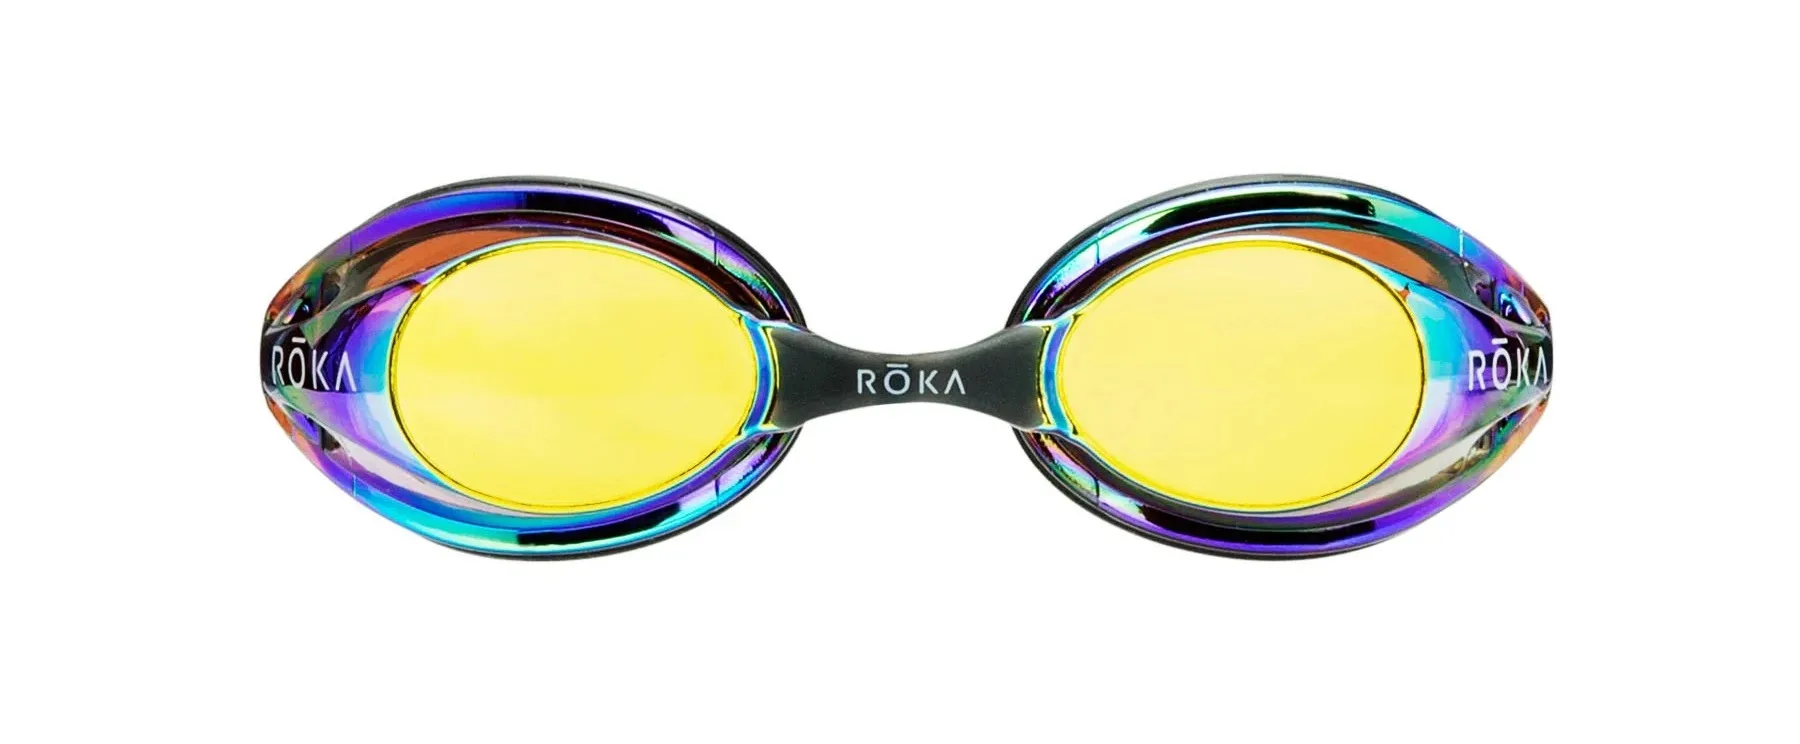 roka f1 open-water triathlon swimming goggles